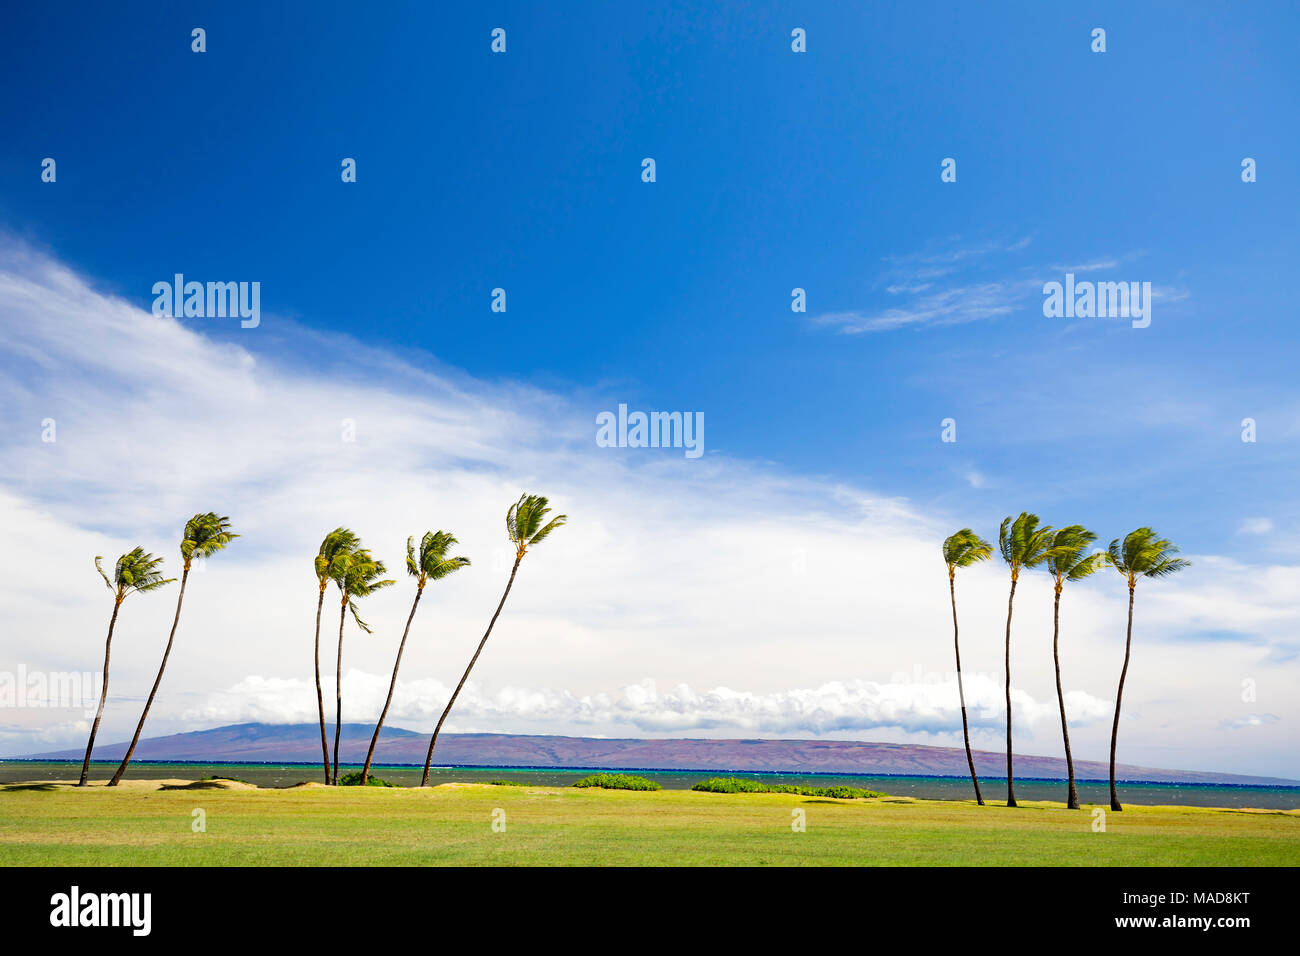 Die Insel Lanai sitzt hinter diesen Palmen Kakahaia Beach Park, Insel Molokai, Hawaii, Vereinigte Staaten von Amerika, Pazifik. Stockfoto